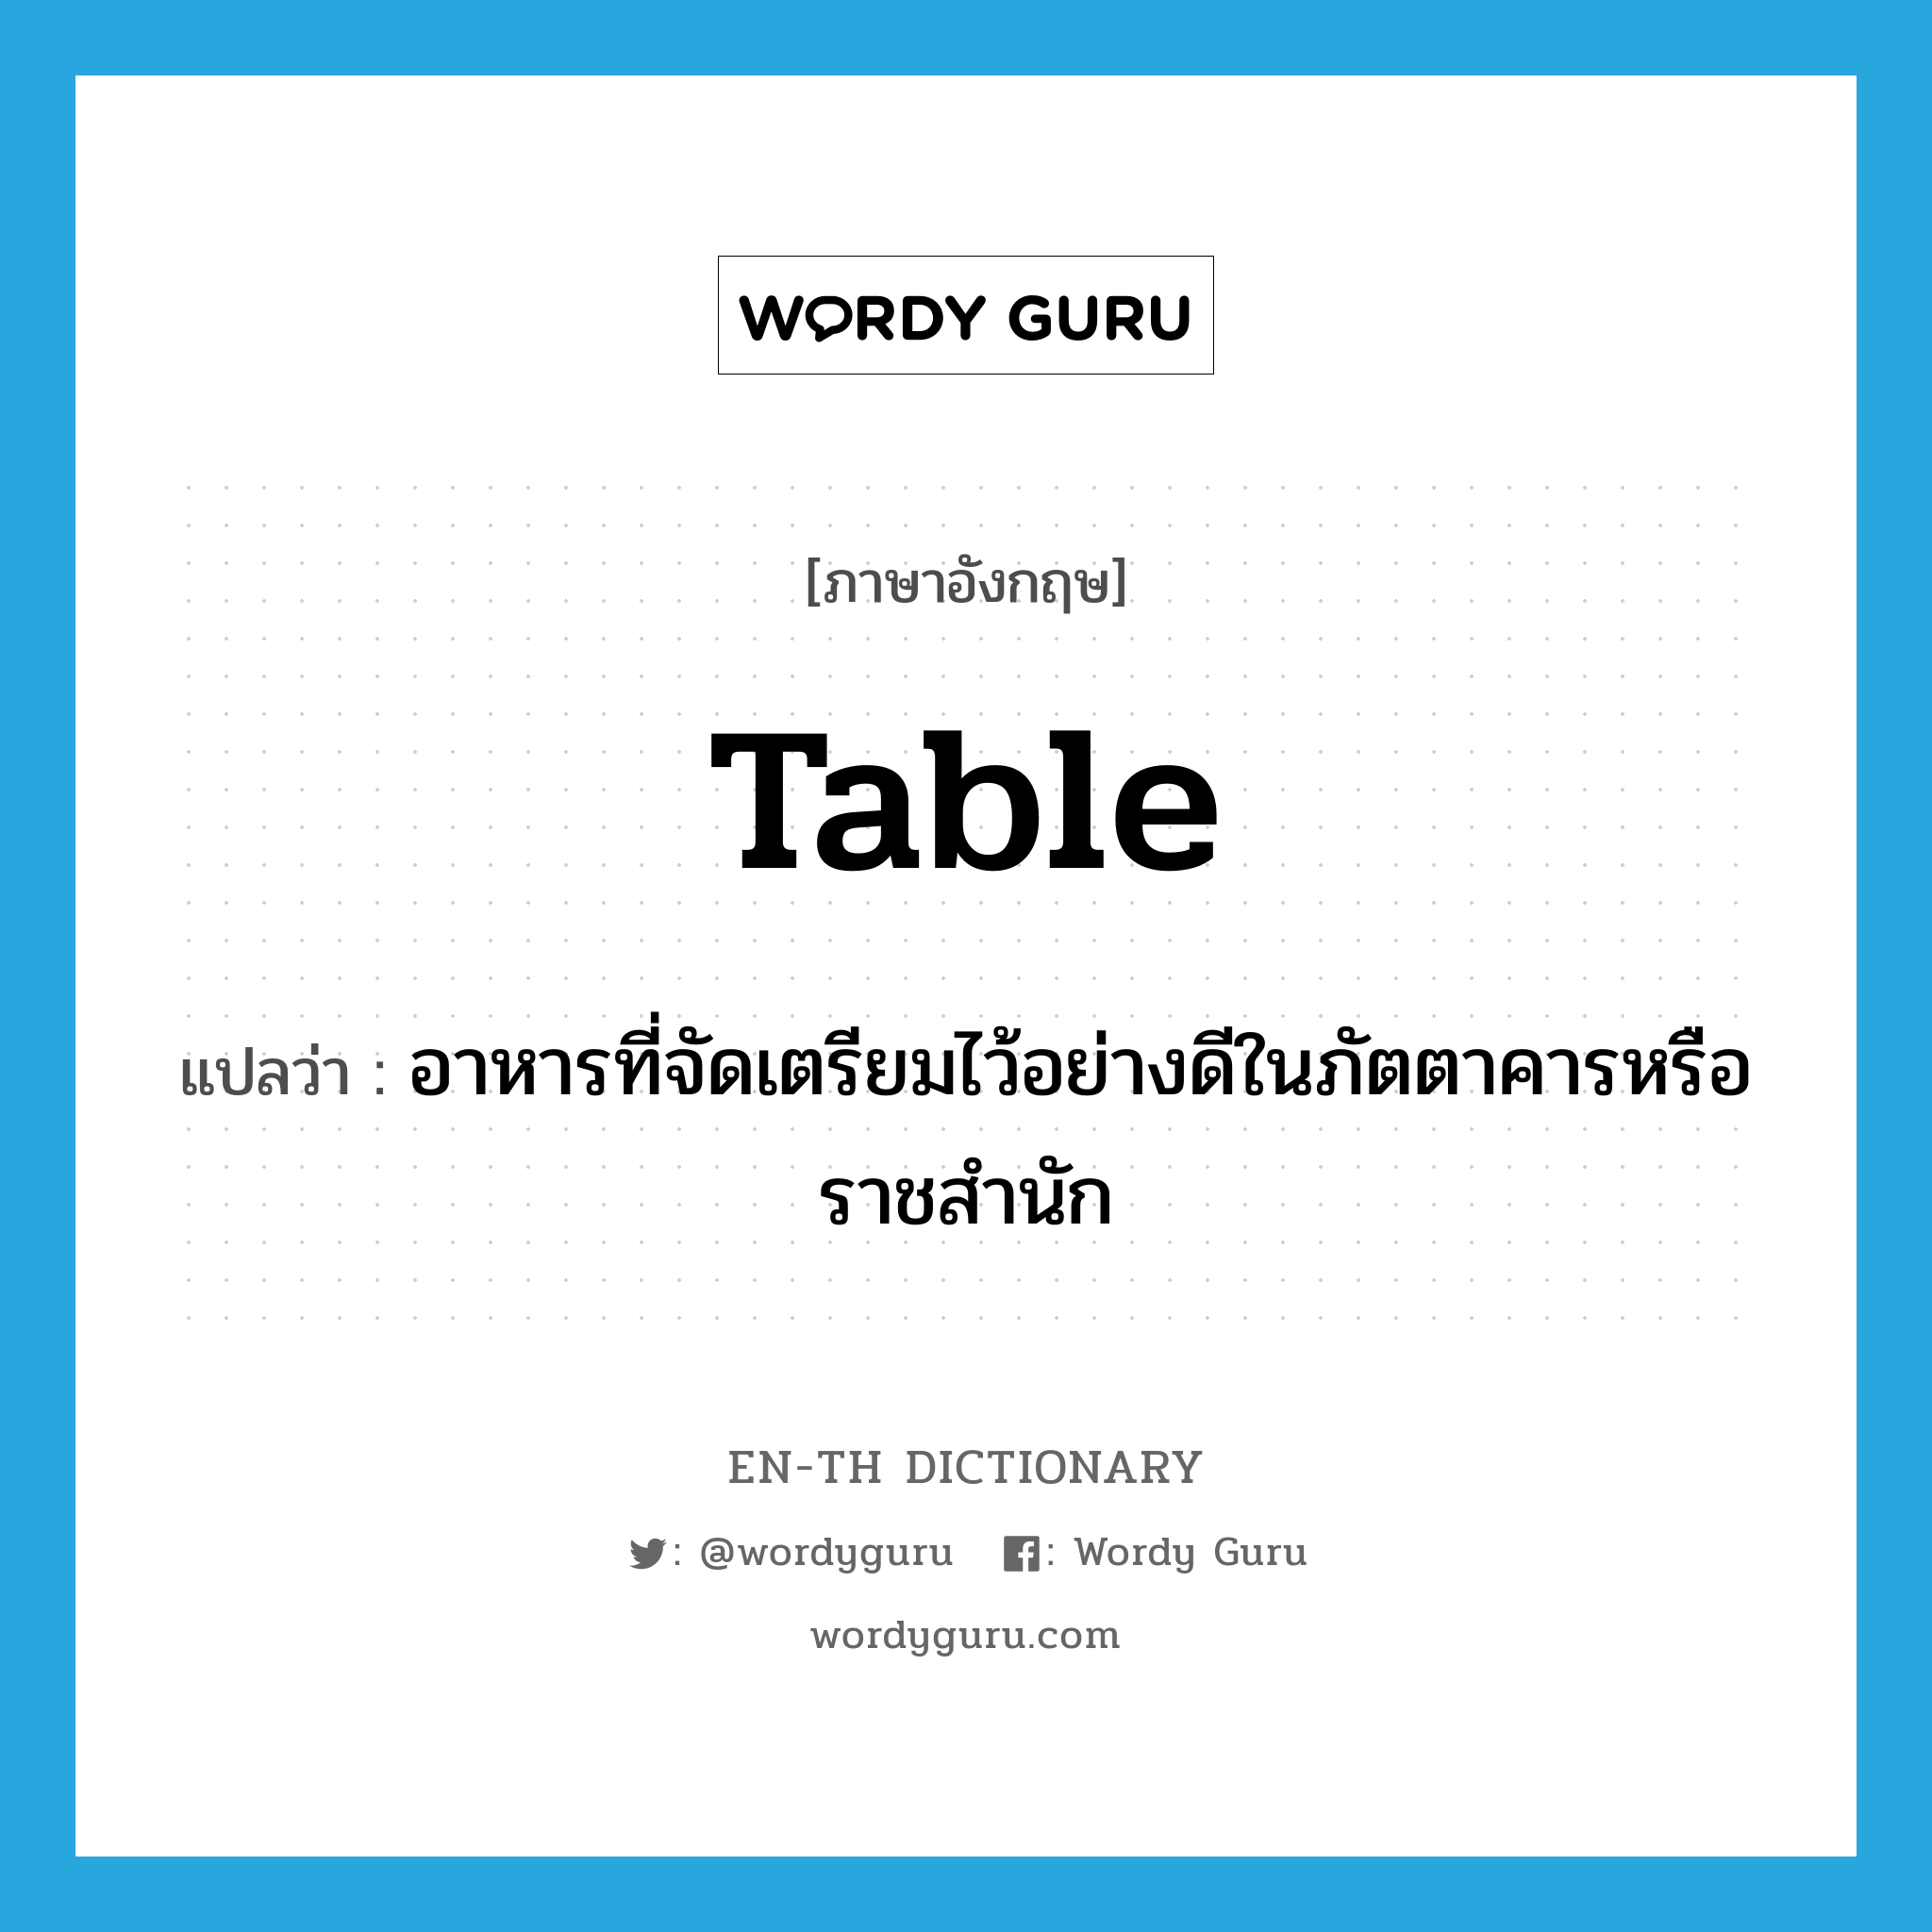 table แปลว่า?, คำศัพท์ภาษาอังกฤษ table แปลว่า อาหารที่จัดเตรียมไว้อย่างดีในภัตตาคารหรือราชสำนัก ประเภท N หมวด N